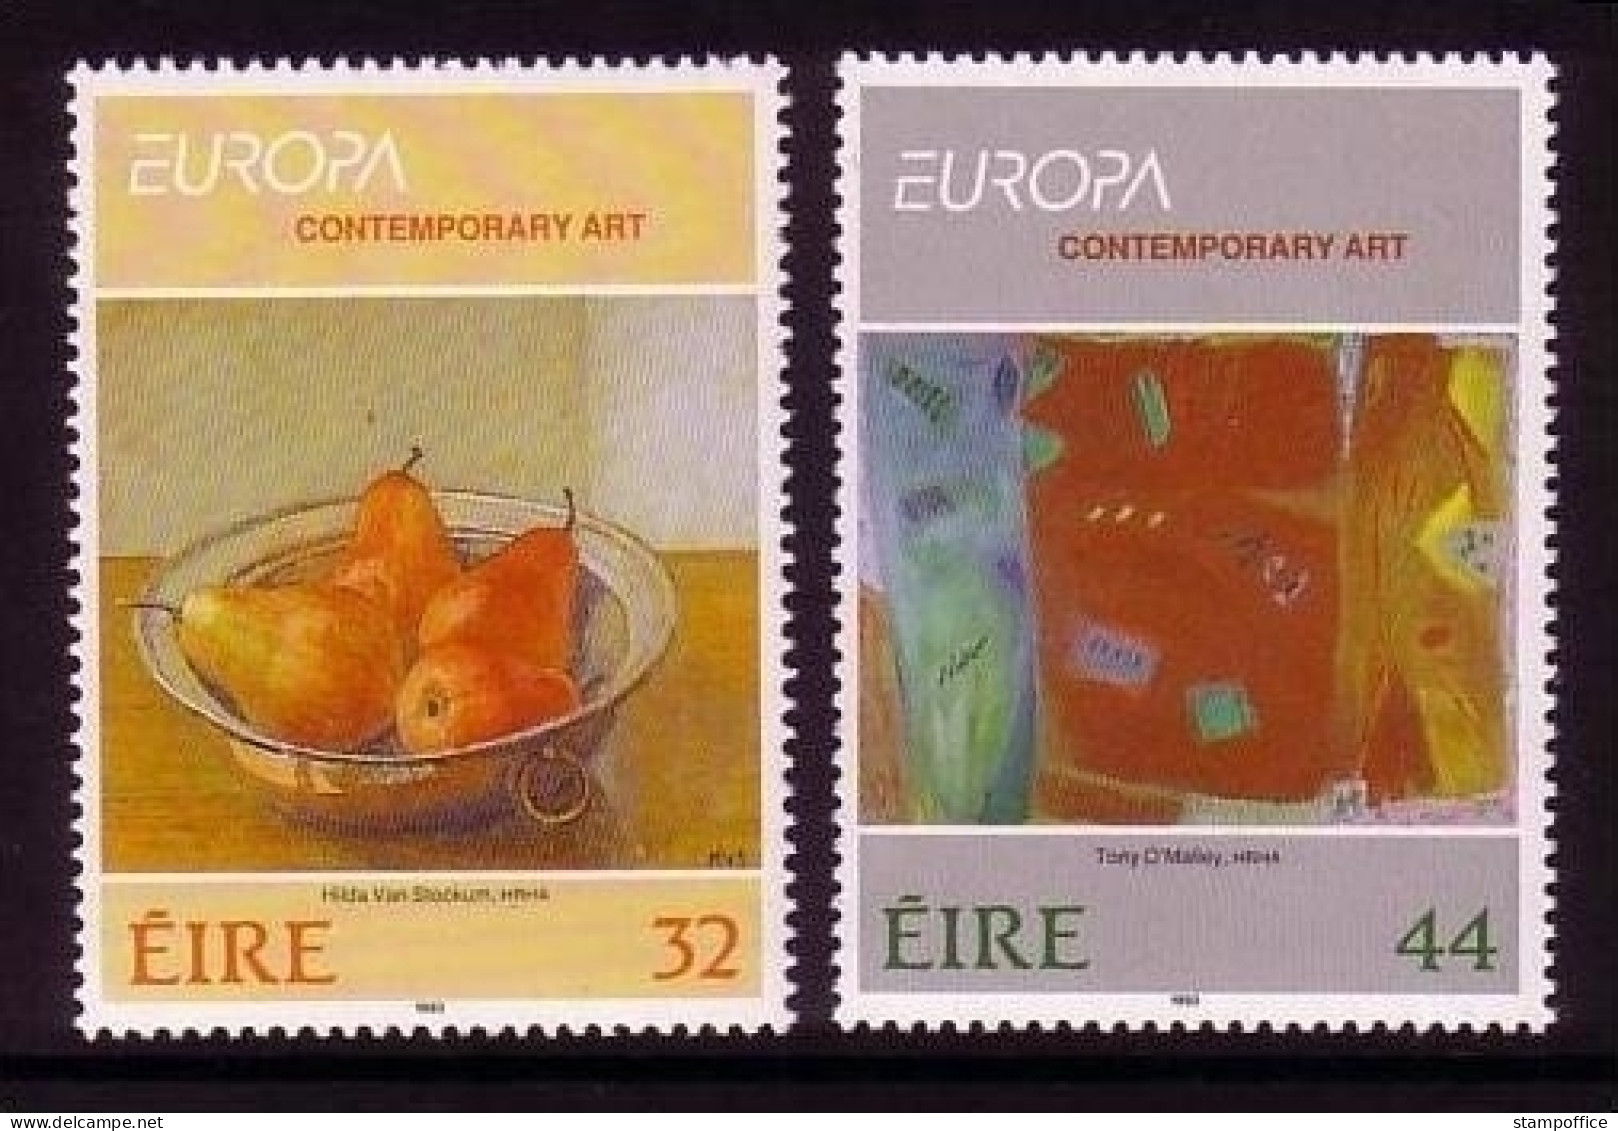 IRLAND MI-NR. 825-826 POSTFRISCH(MINT) EUROPA 1993 - ZEITGENÖSSISCHE KUNST - 1993